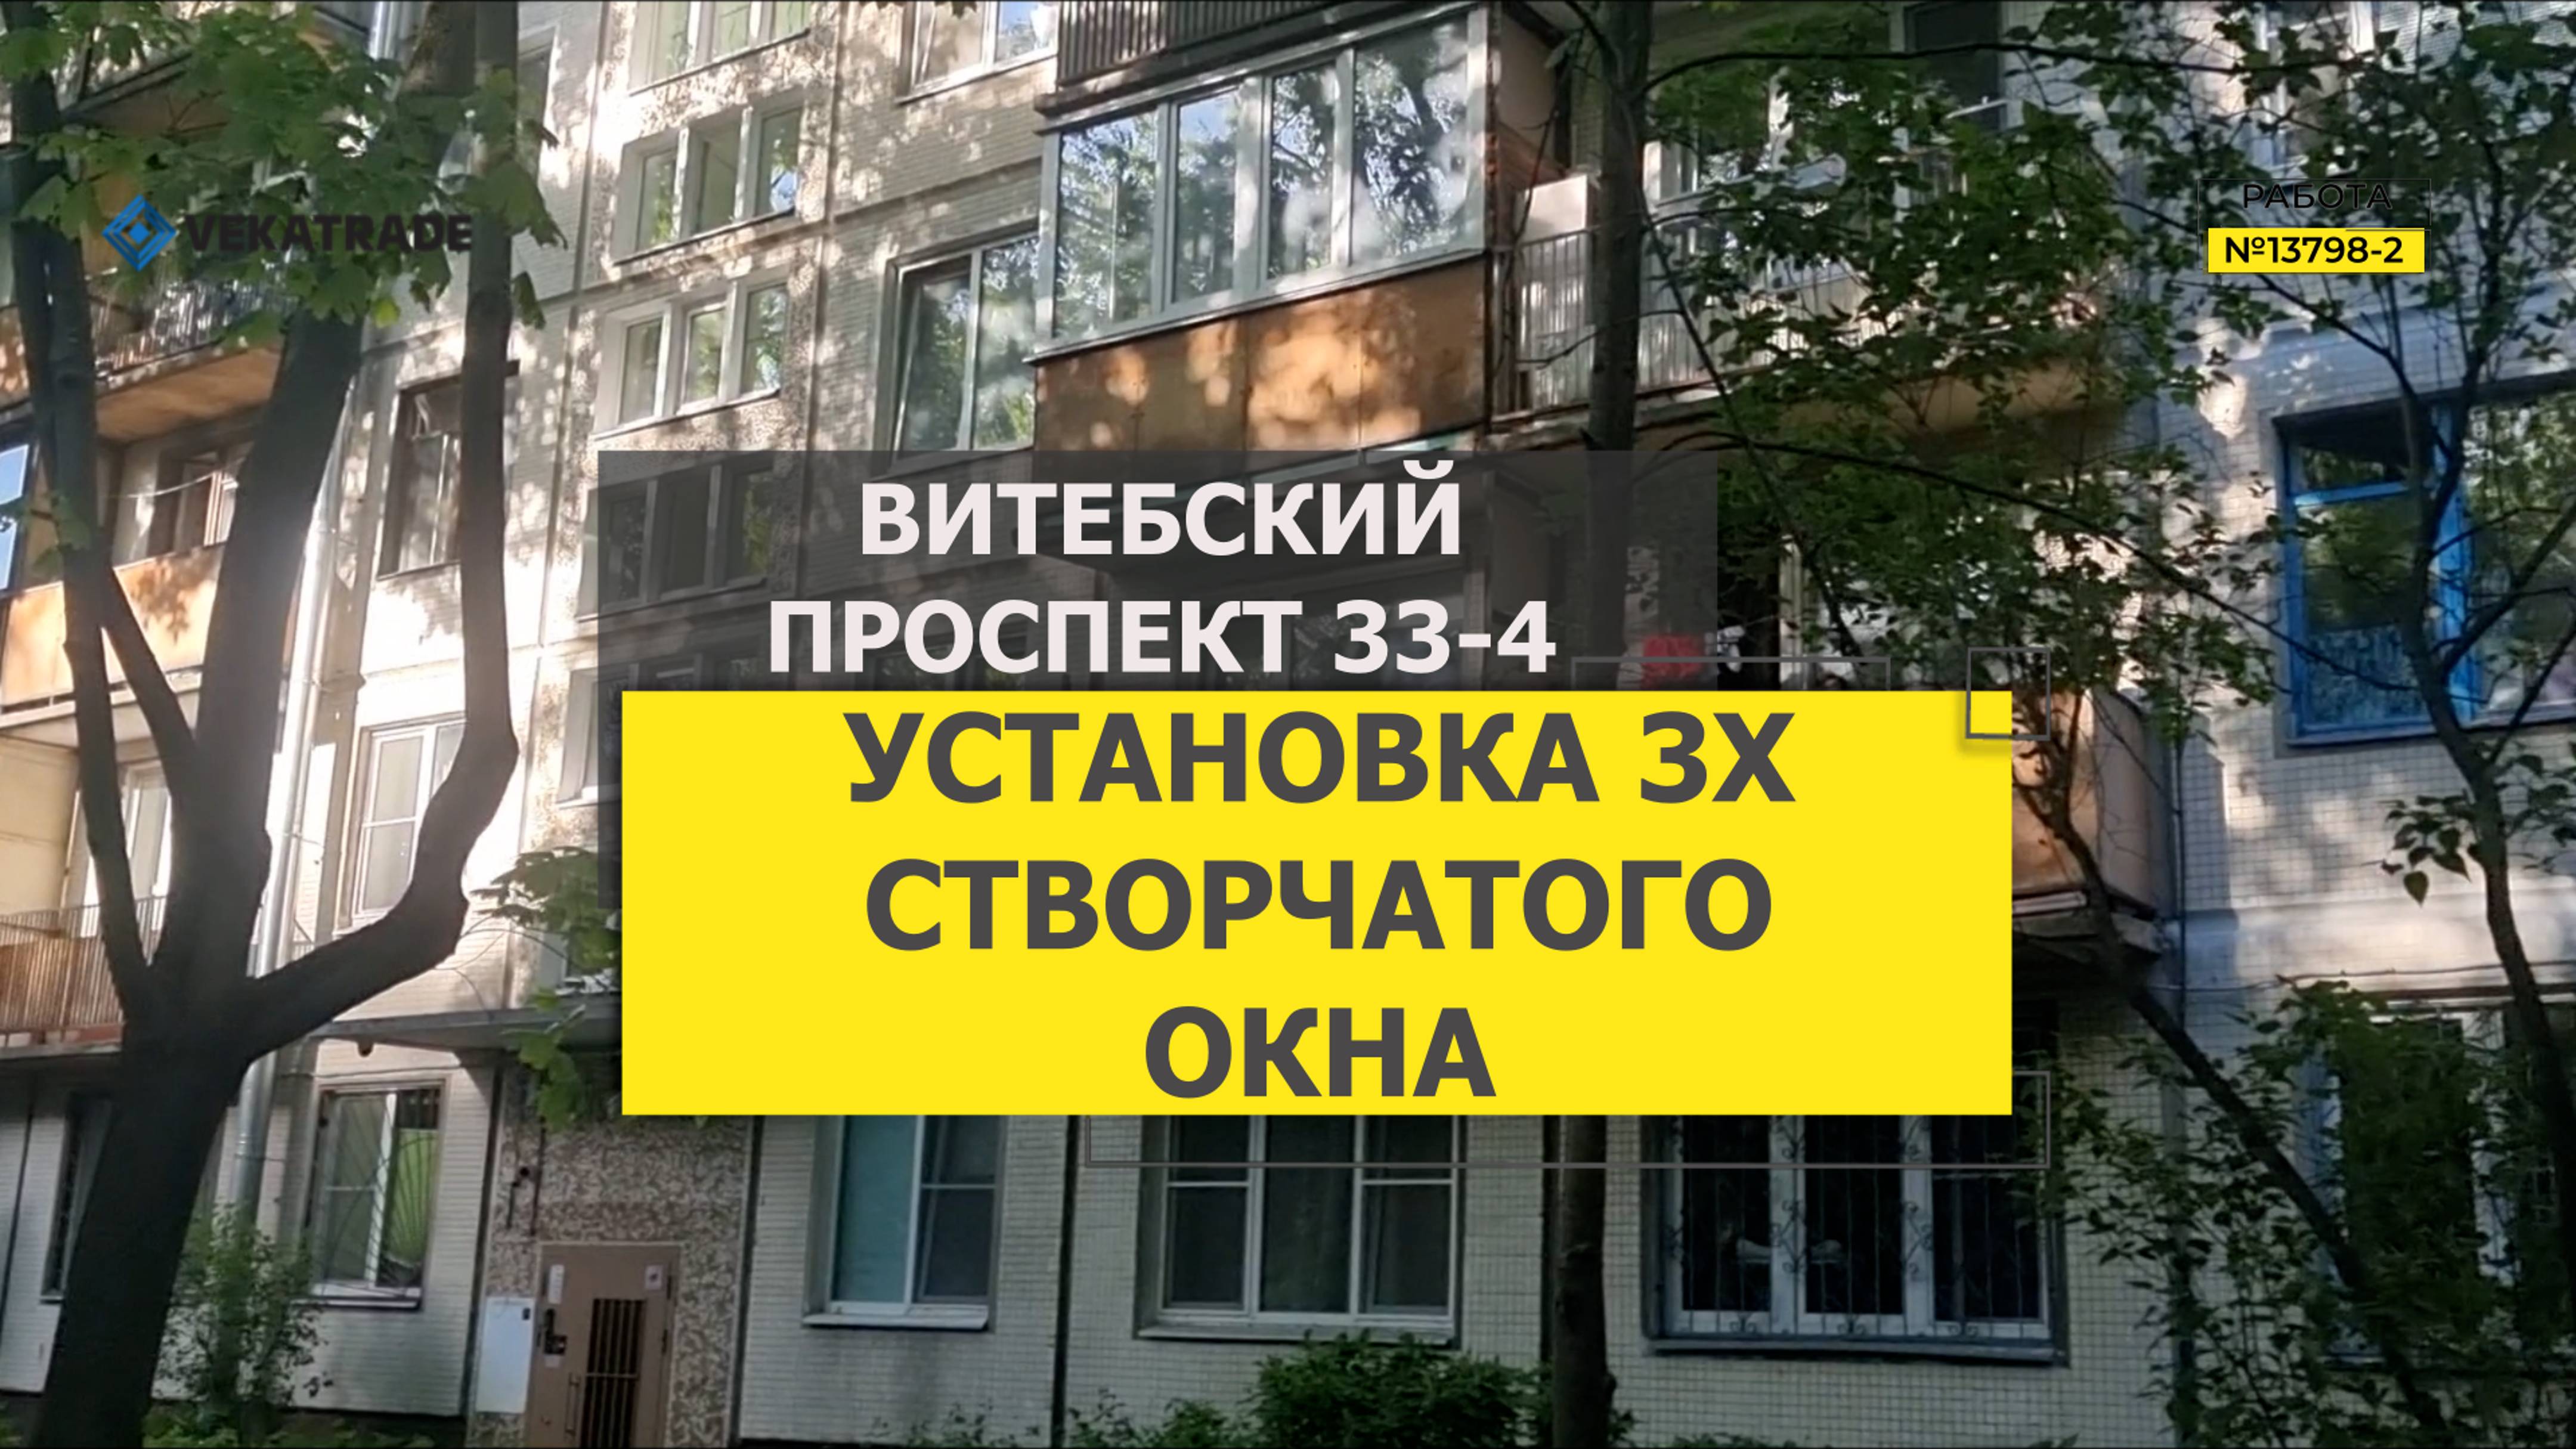 №13798 - 2 Витебский проспект 33-4 серия дома 1ЛГ-507 остекление квартиры